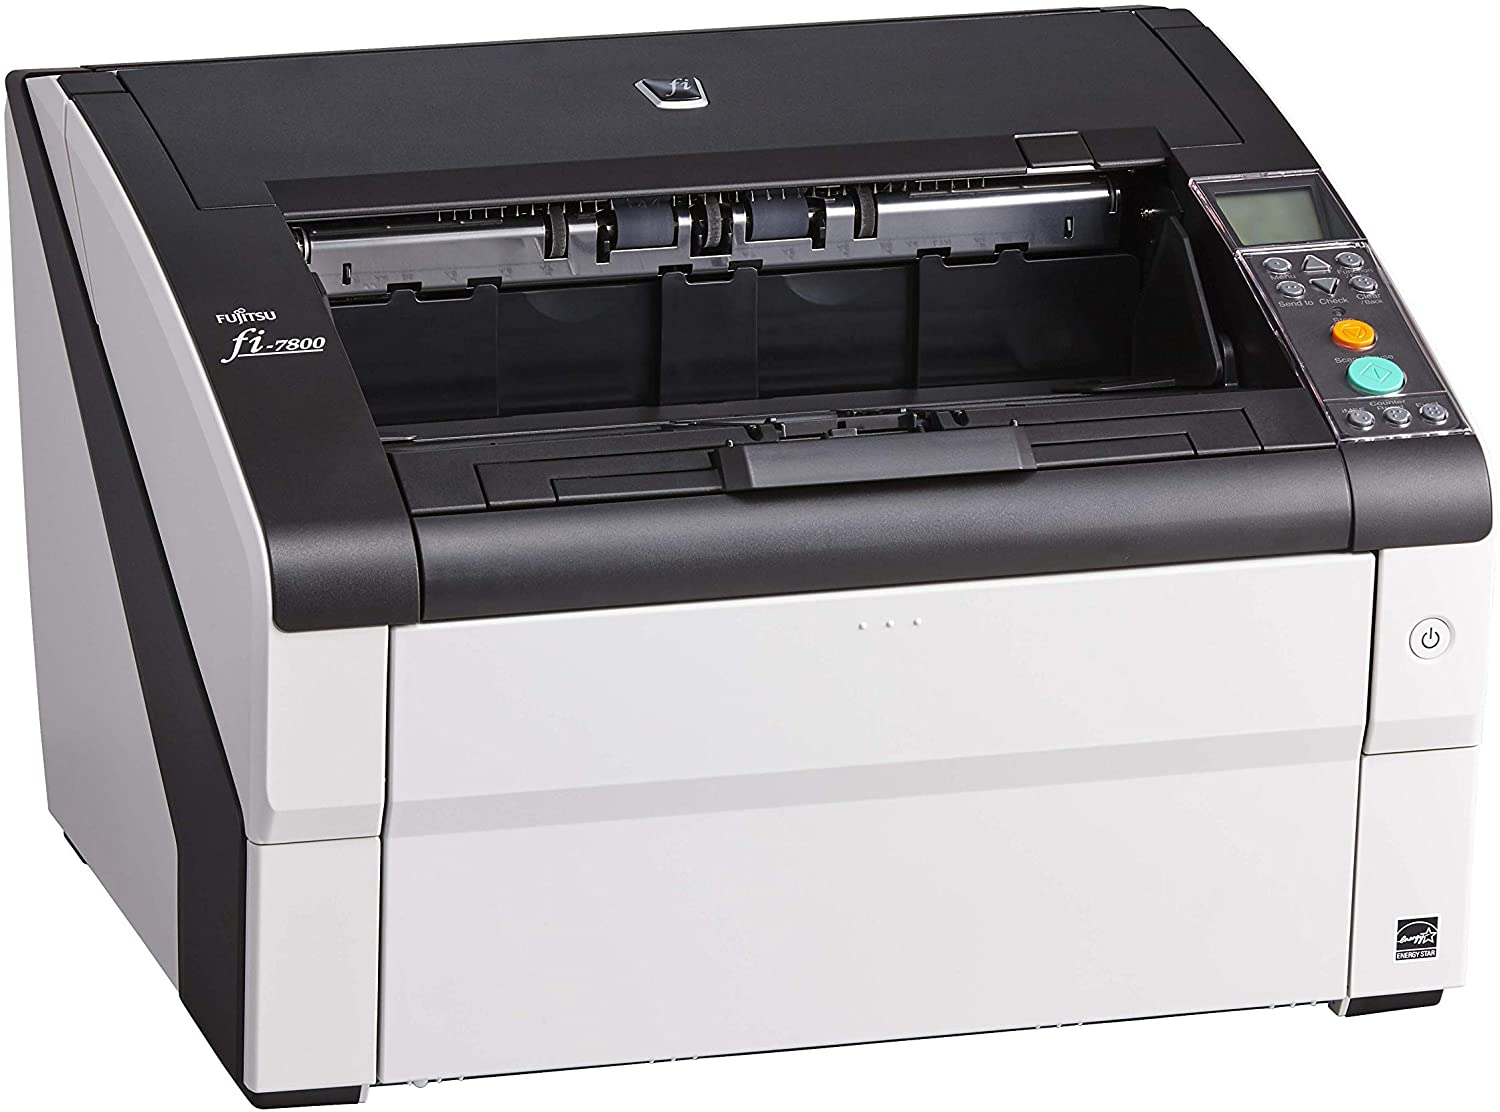 Dòng máy scan này của nhà Fujitsu là công cụ hữu hiệu giúp việc xử lý tài liệu nhanh chóng